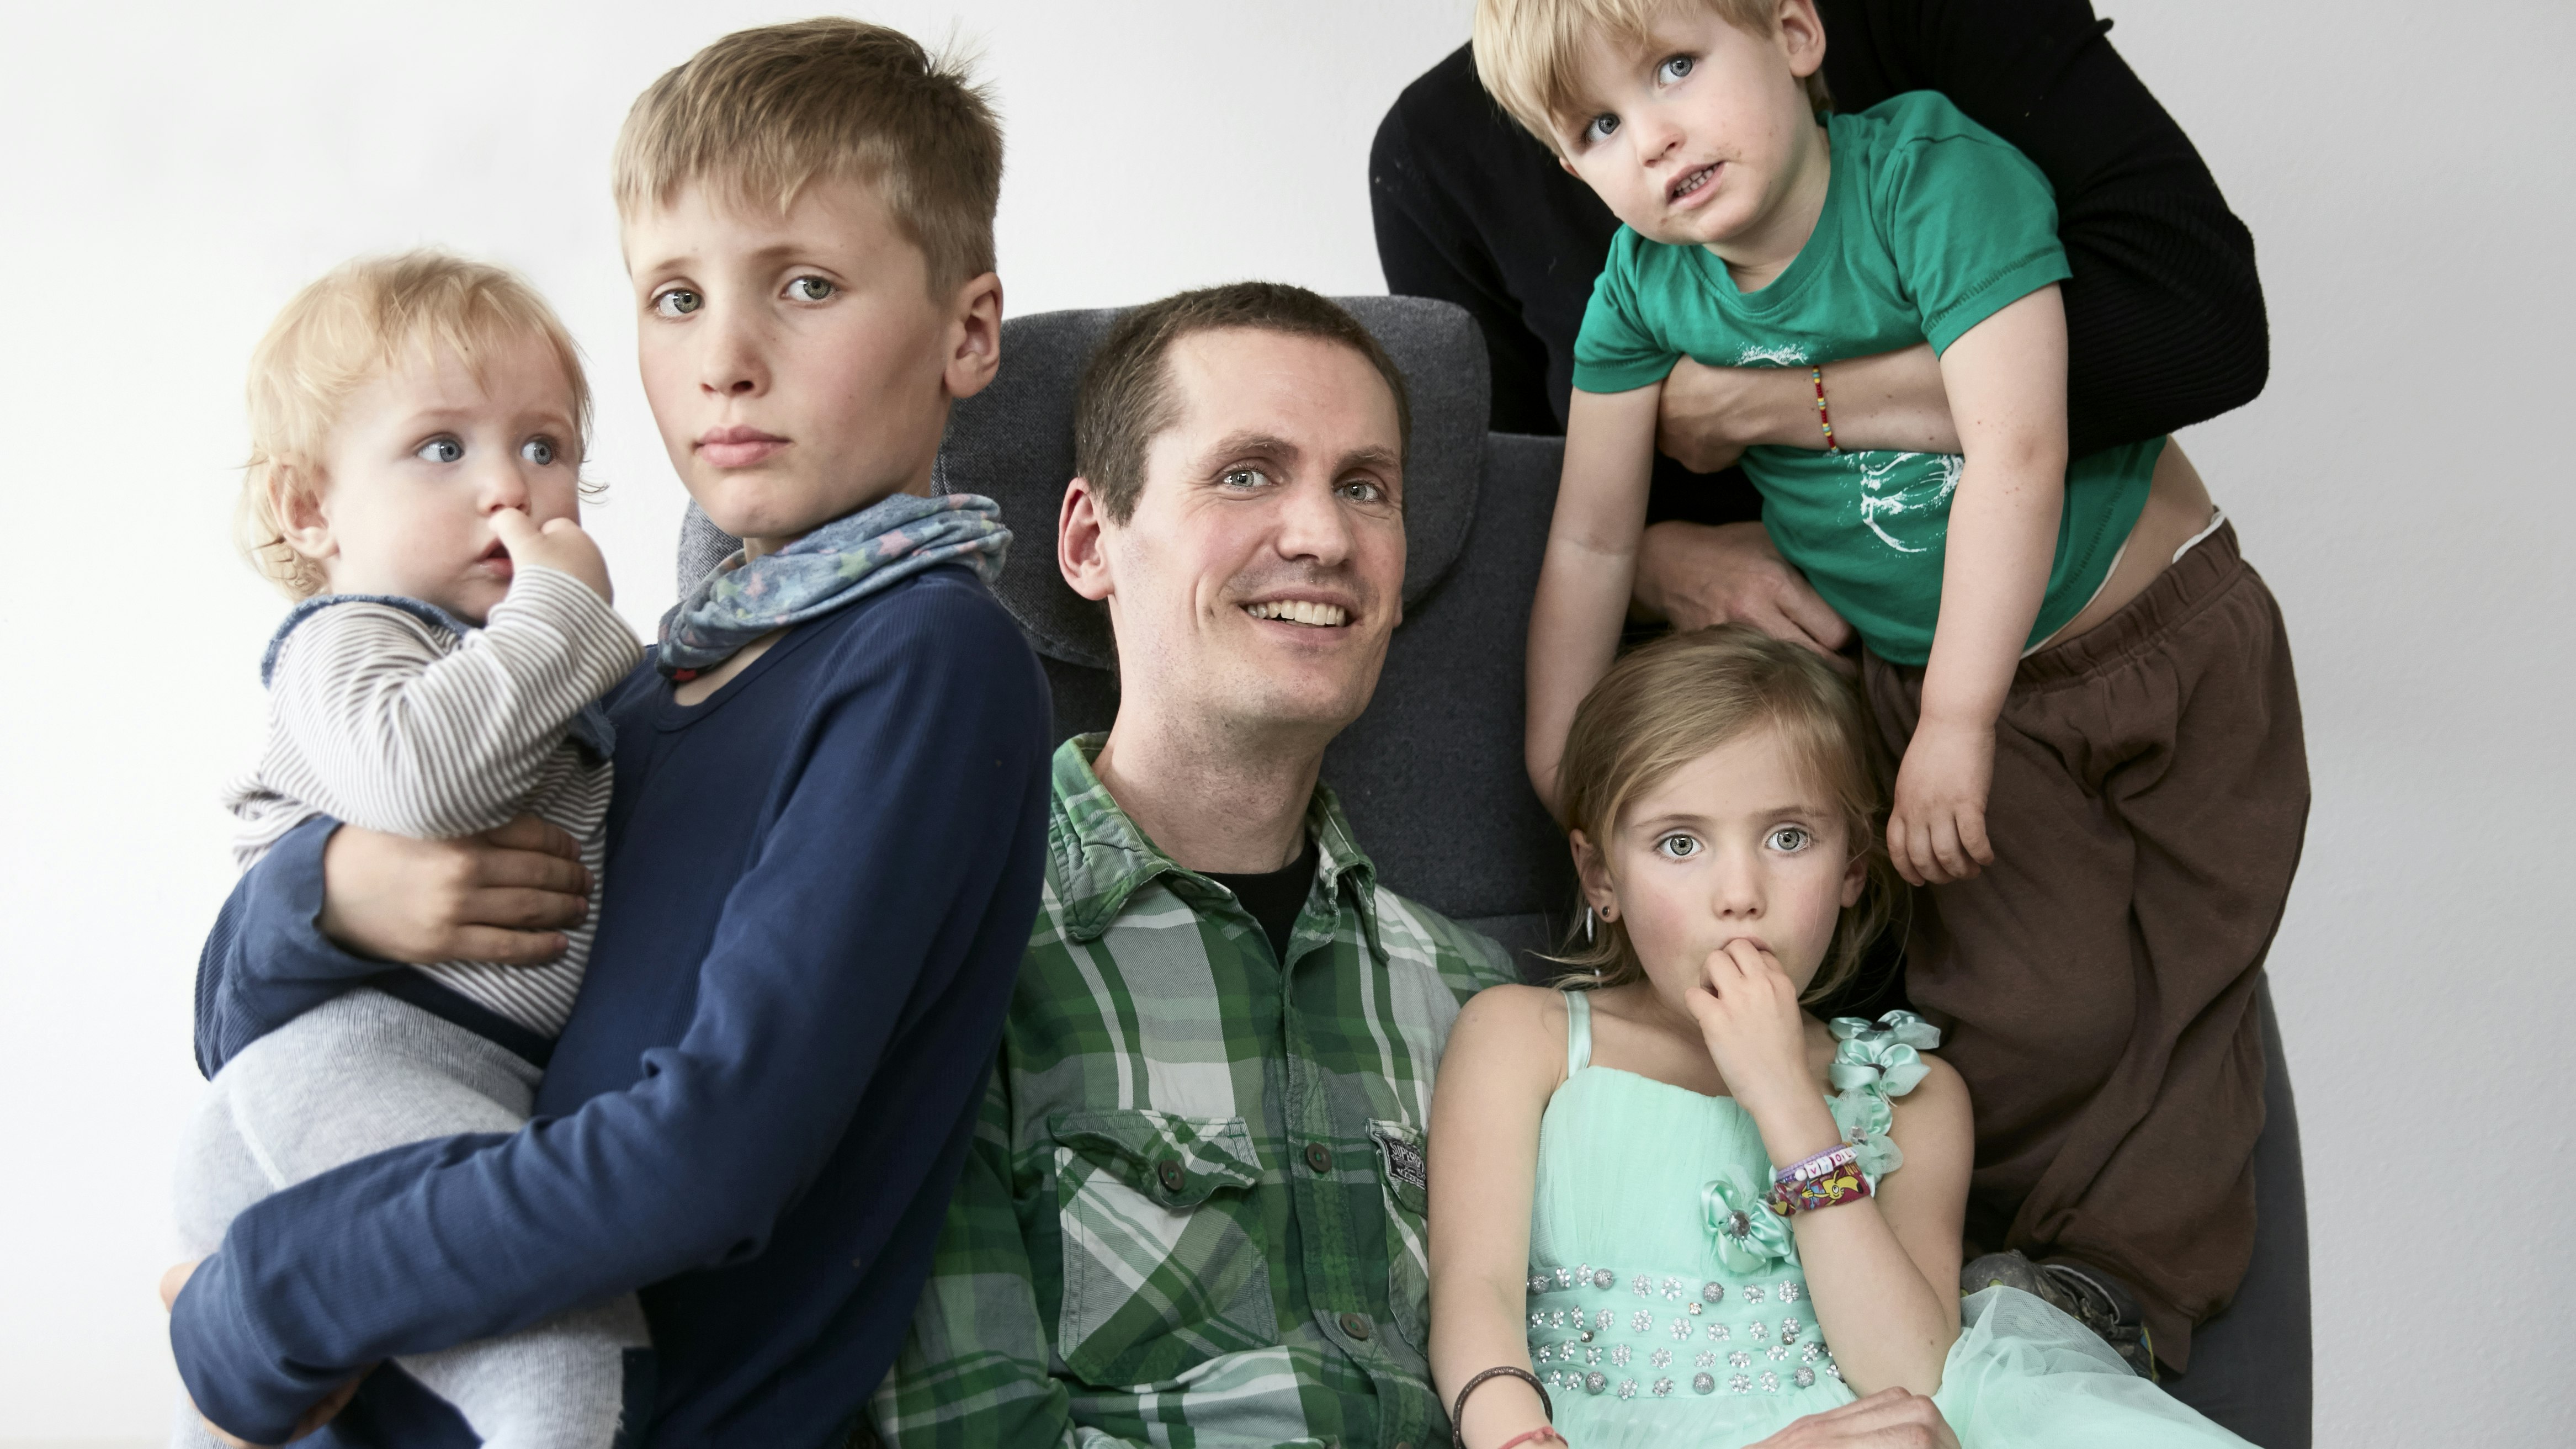 Lasse Lüders lider af sygdommen ALS, her ses han med hele familien